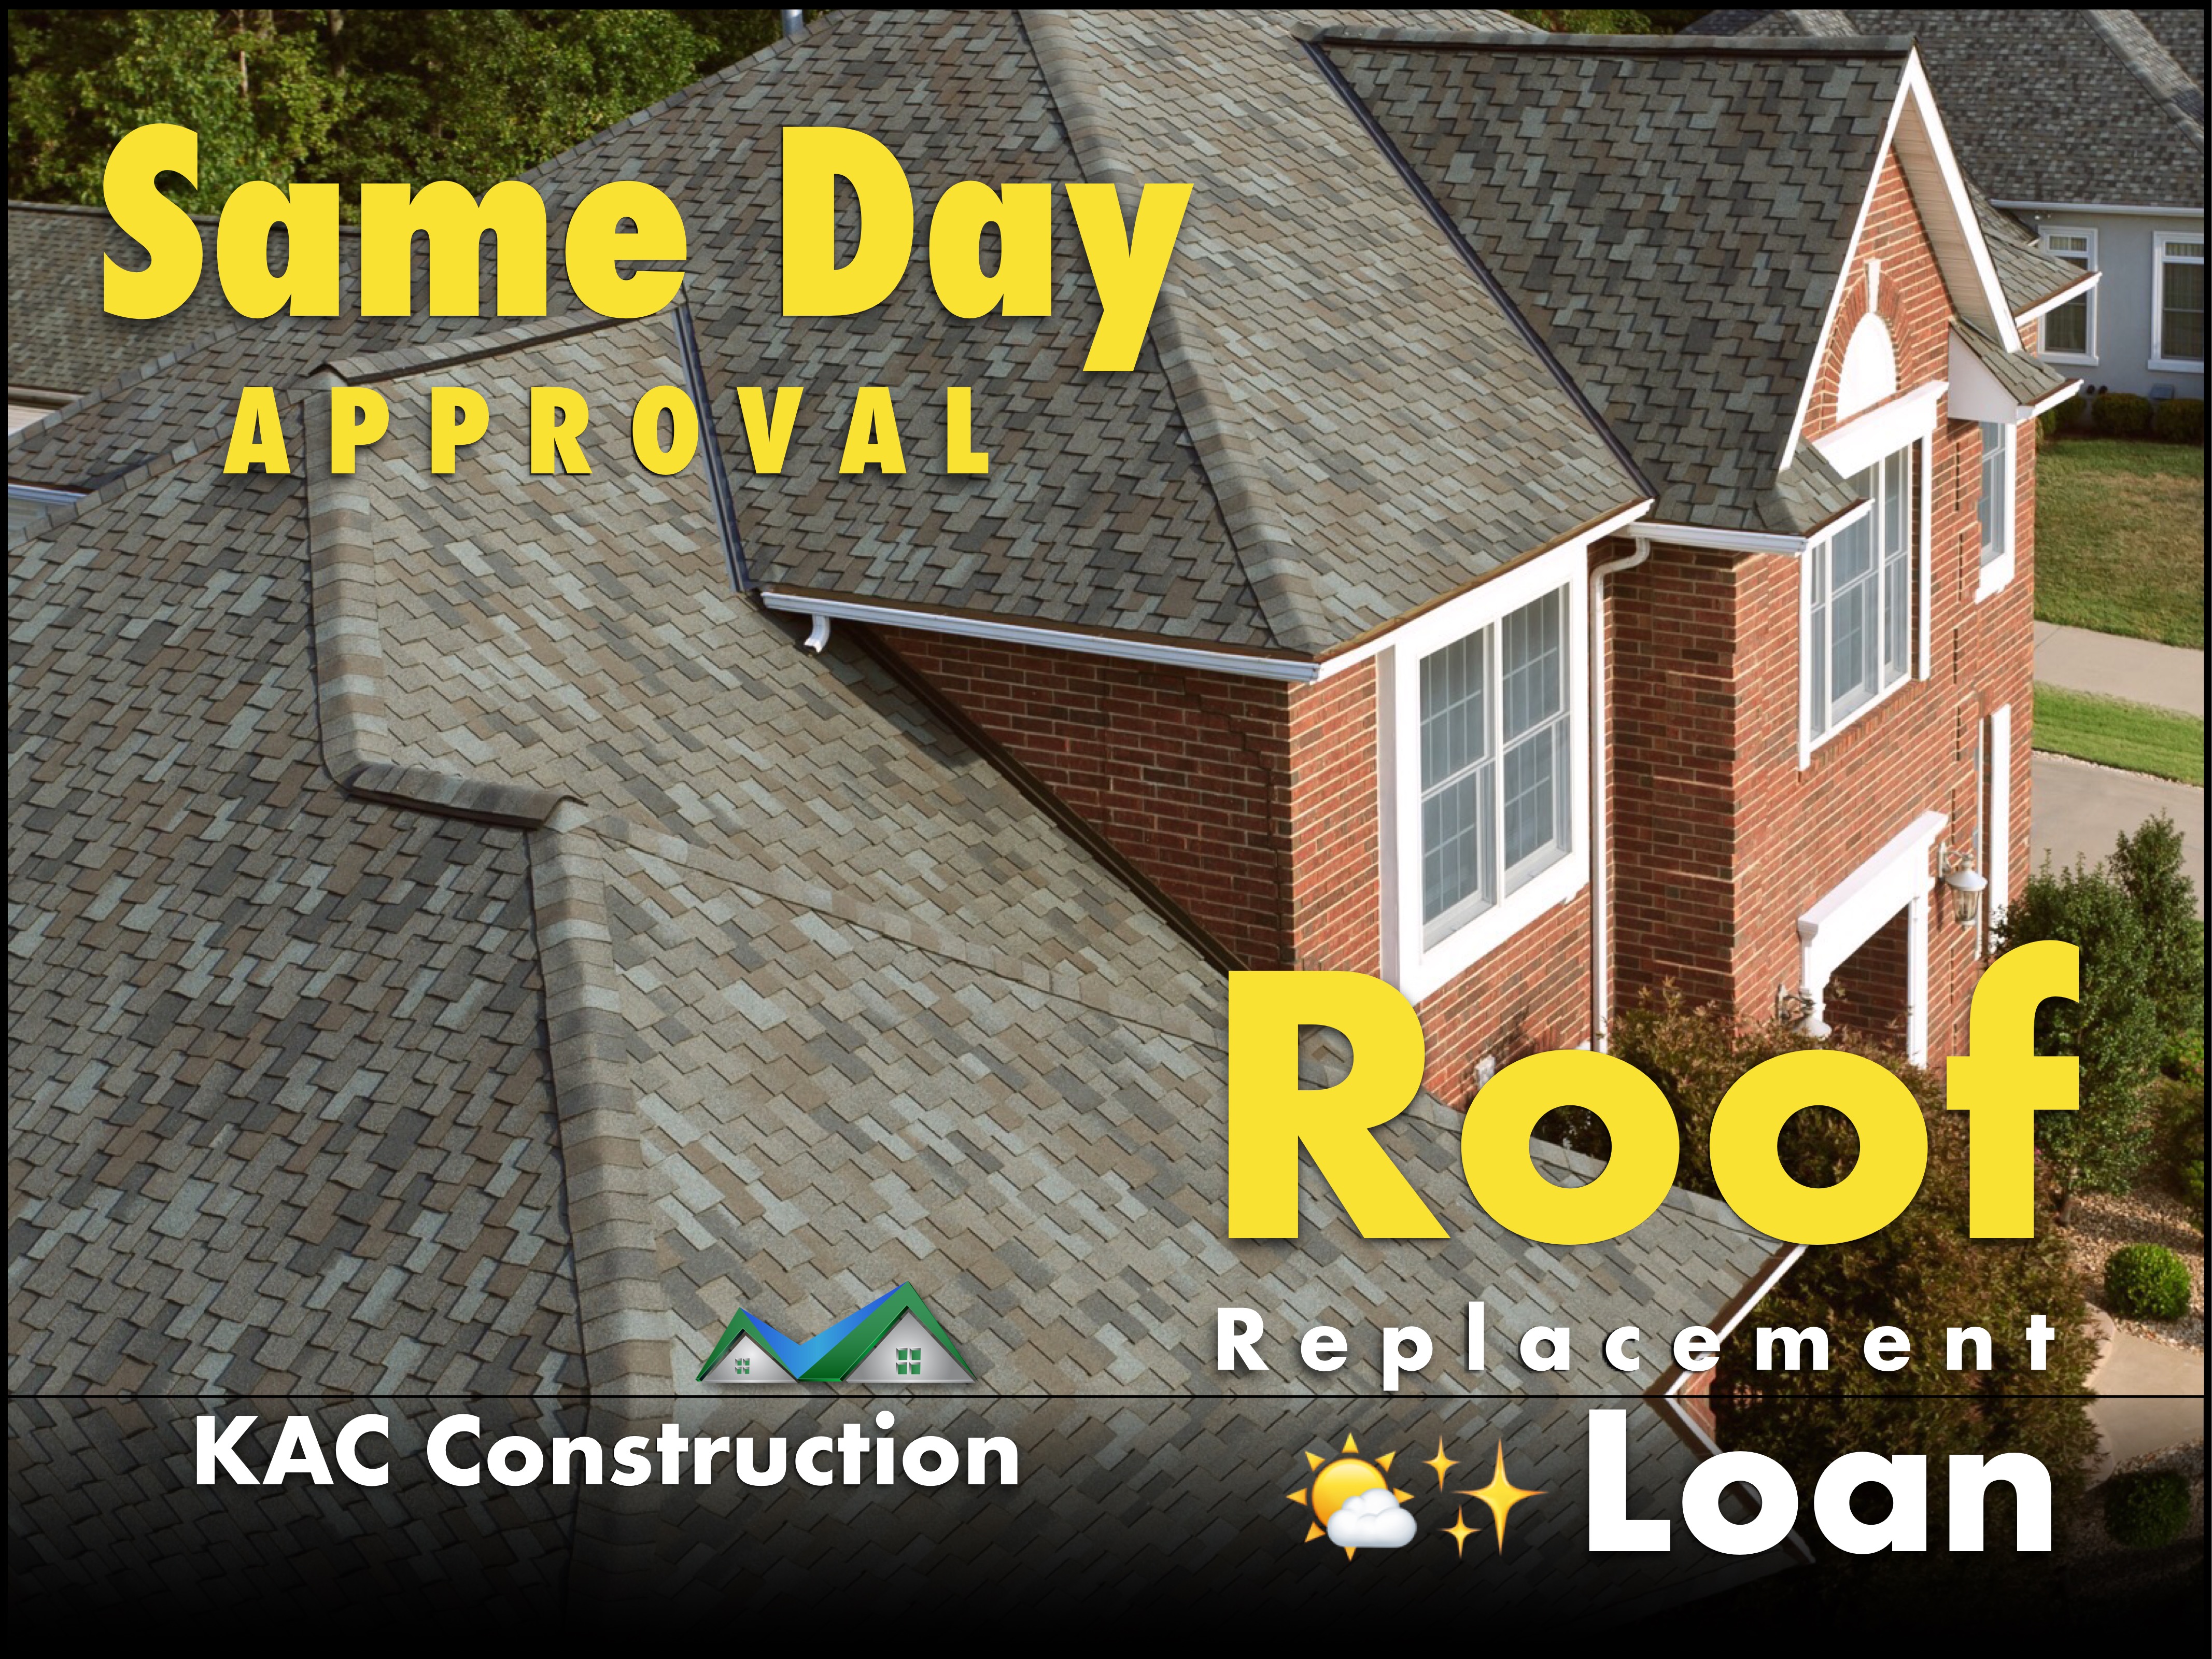 Same day, same day loan, same day loan ri, Loan ri, roof Loan ri, roofing Loan ri, roofer Loan ri, roofers loans ri, same day roof financing, same day roof financing ri, same day roof ri